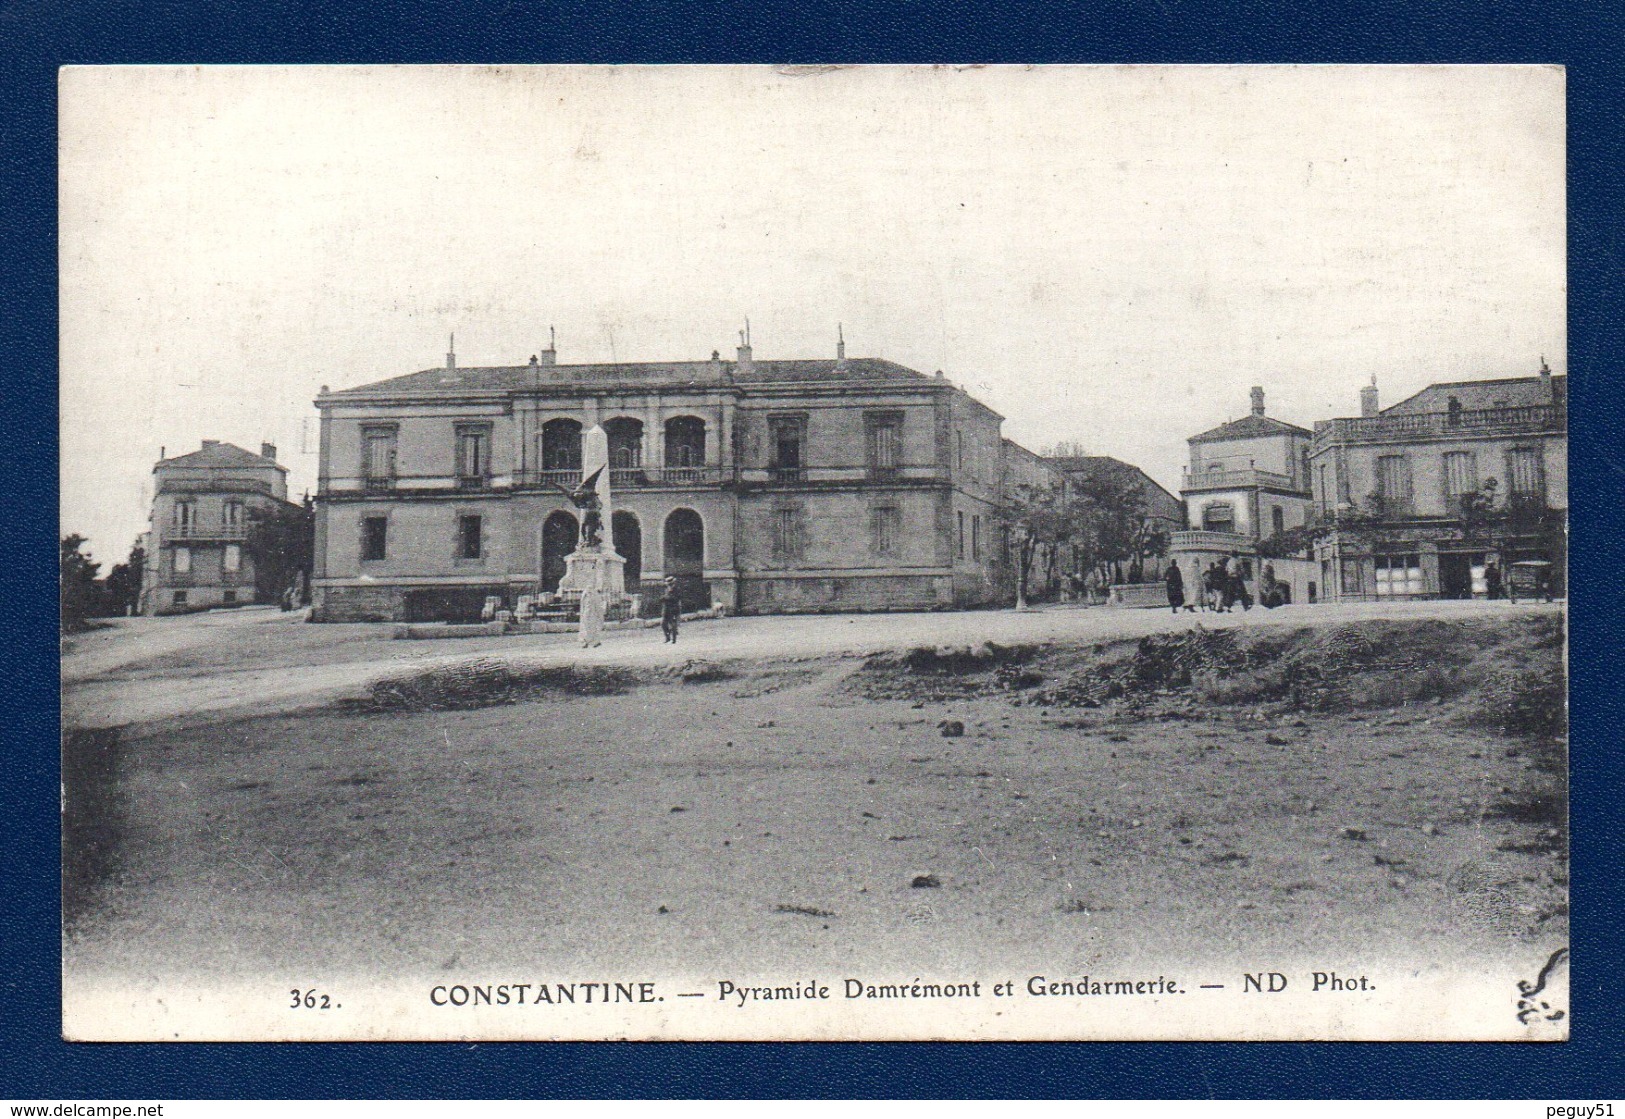 Algérie. Constantine. Place De La Pyramide. Gendarmerie. Obélisque Et Statue Du Général Danrémont (1915) - Constantine